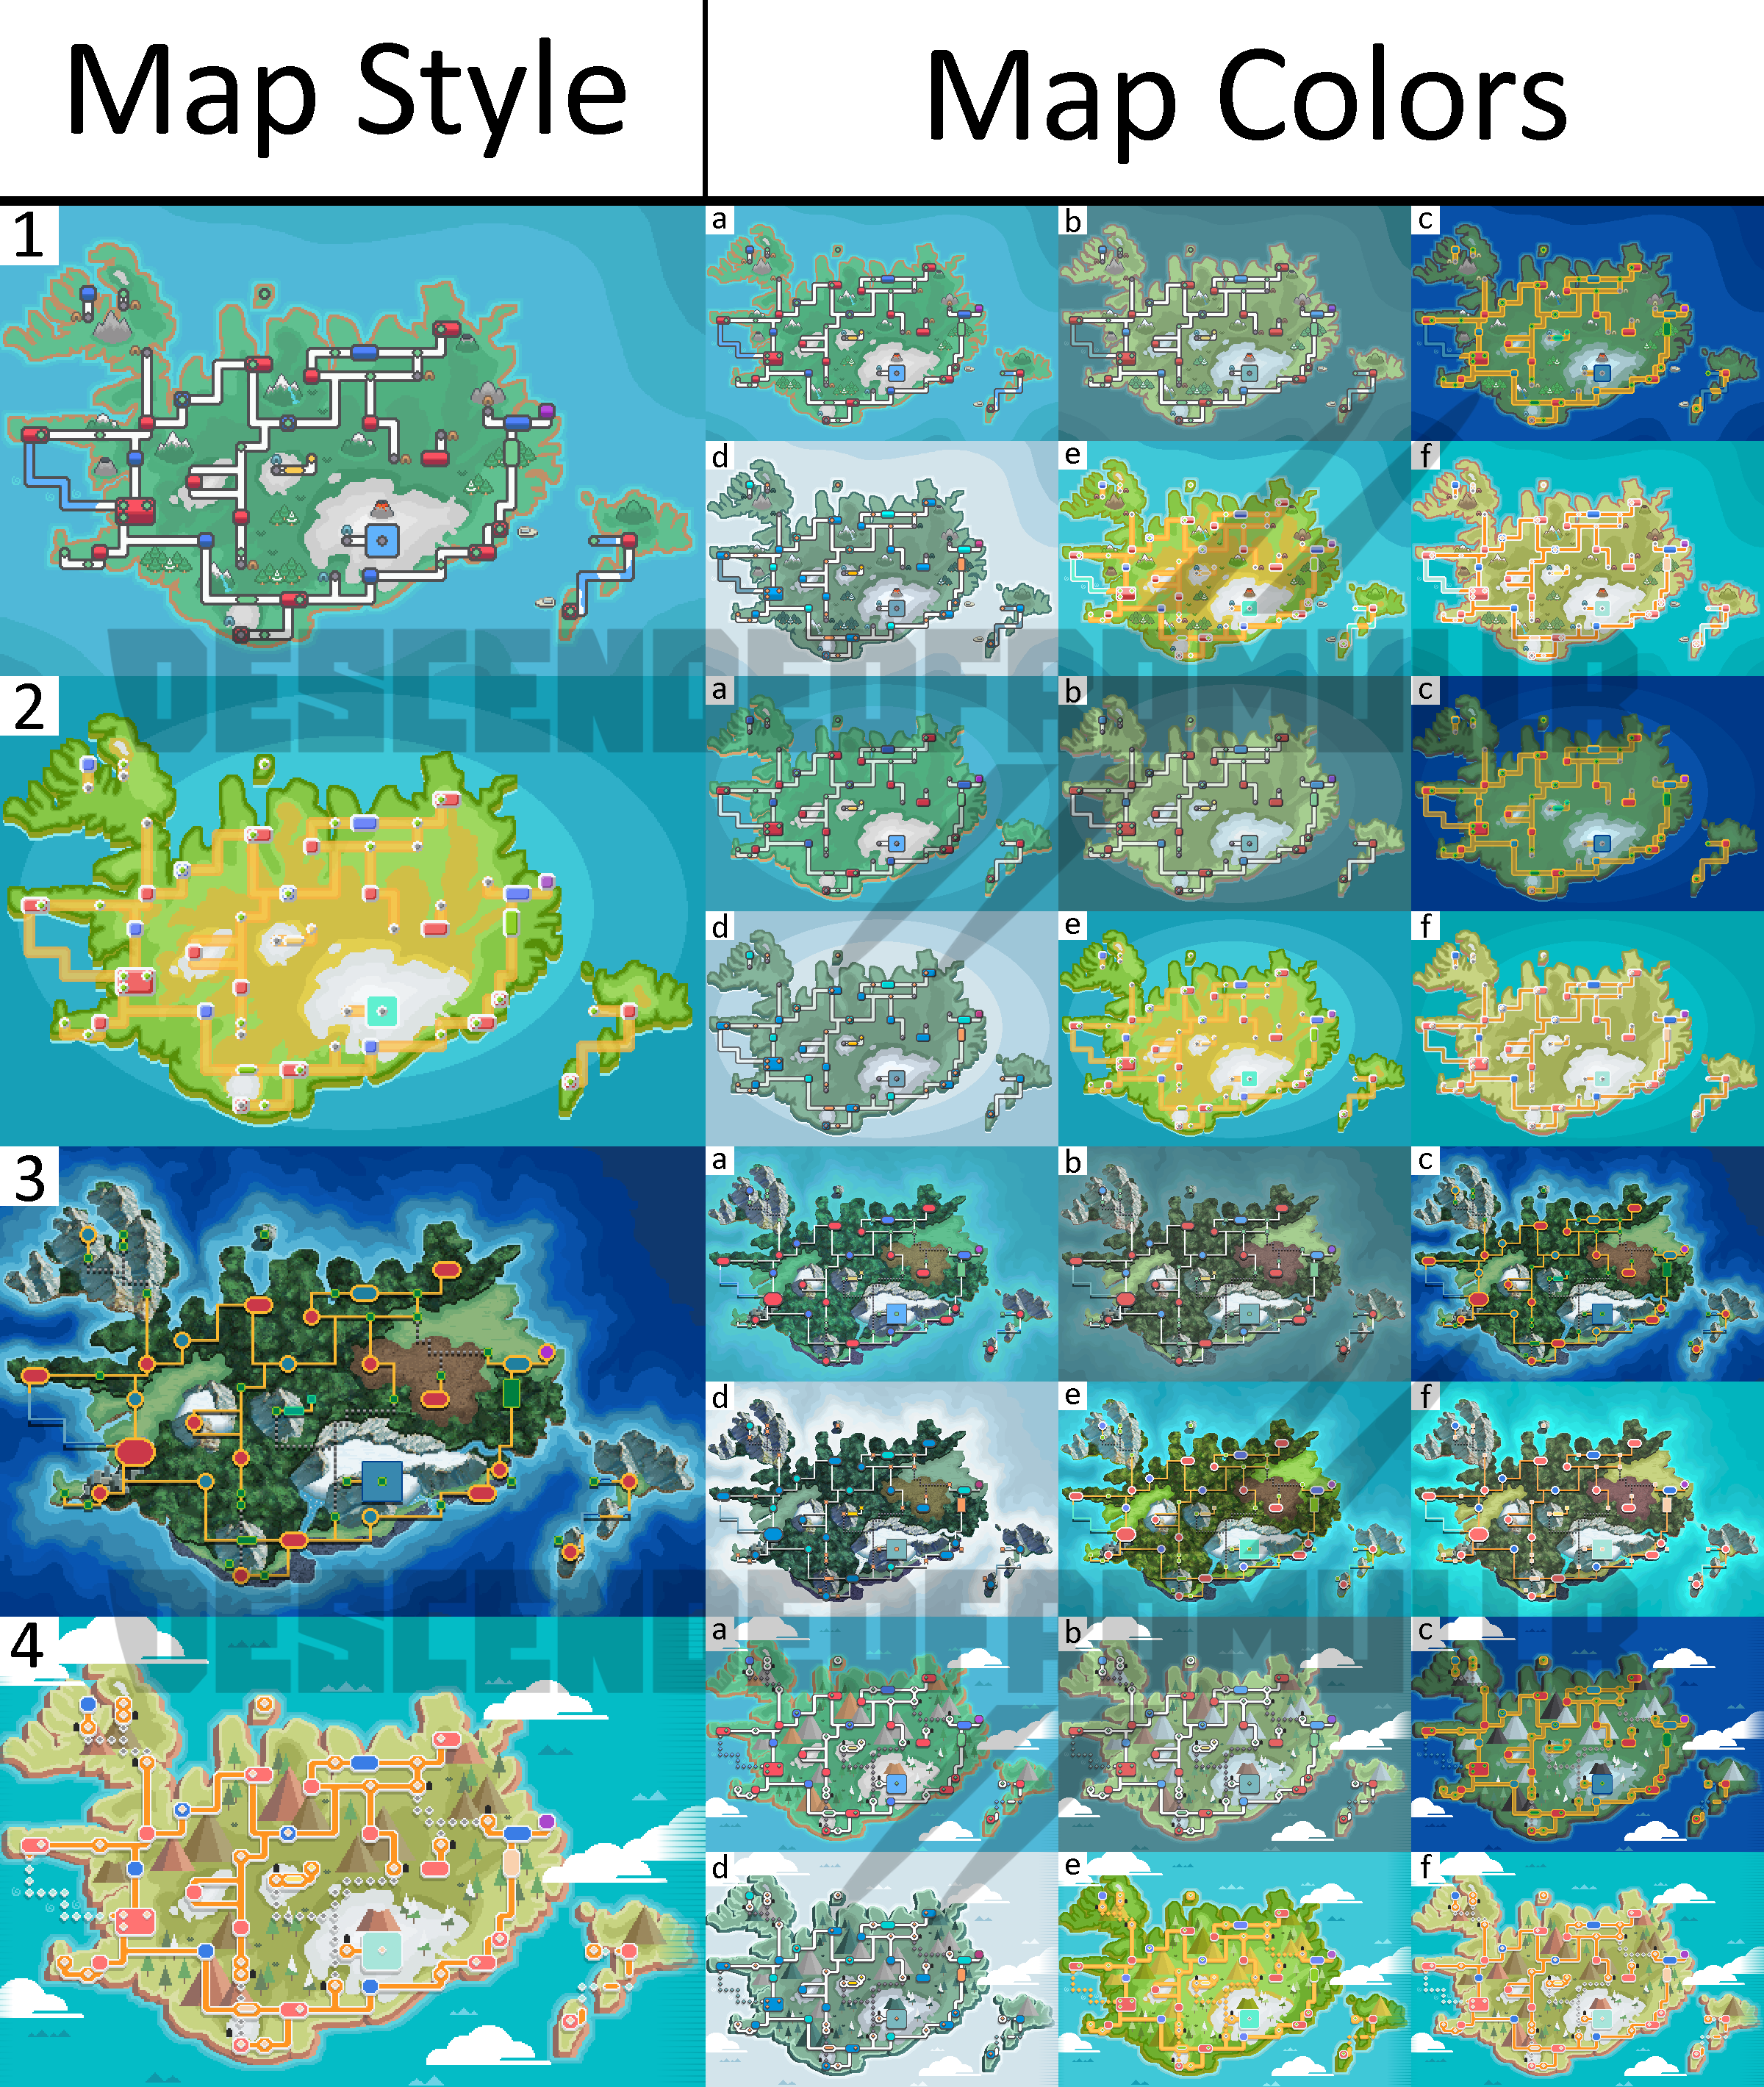 Pokémon regions